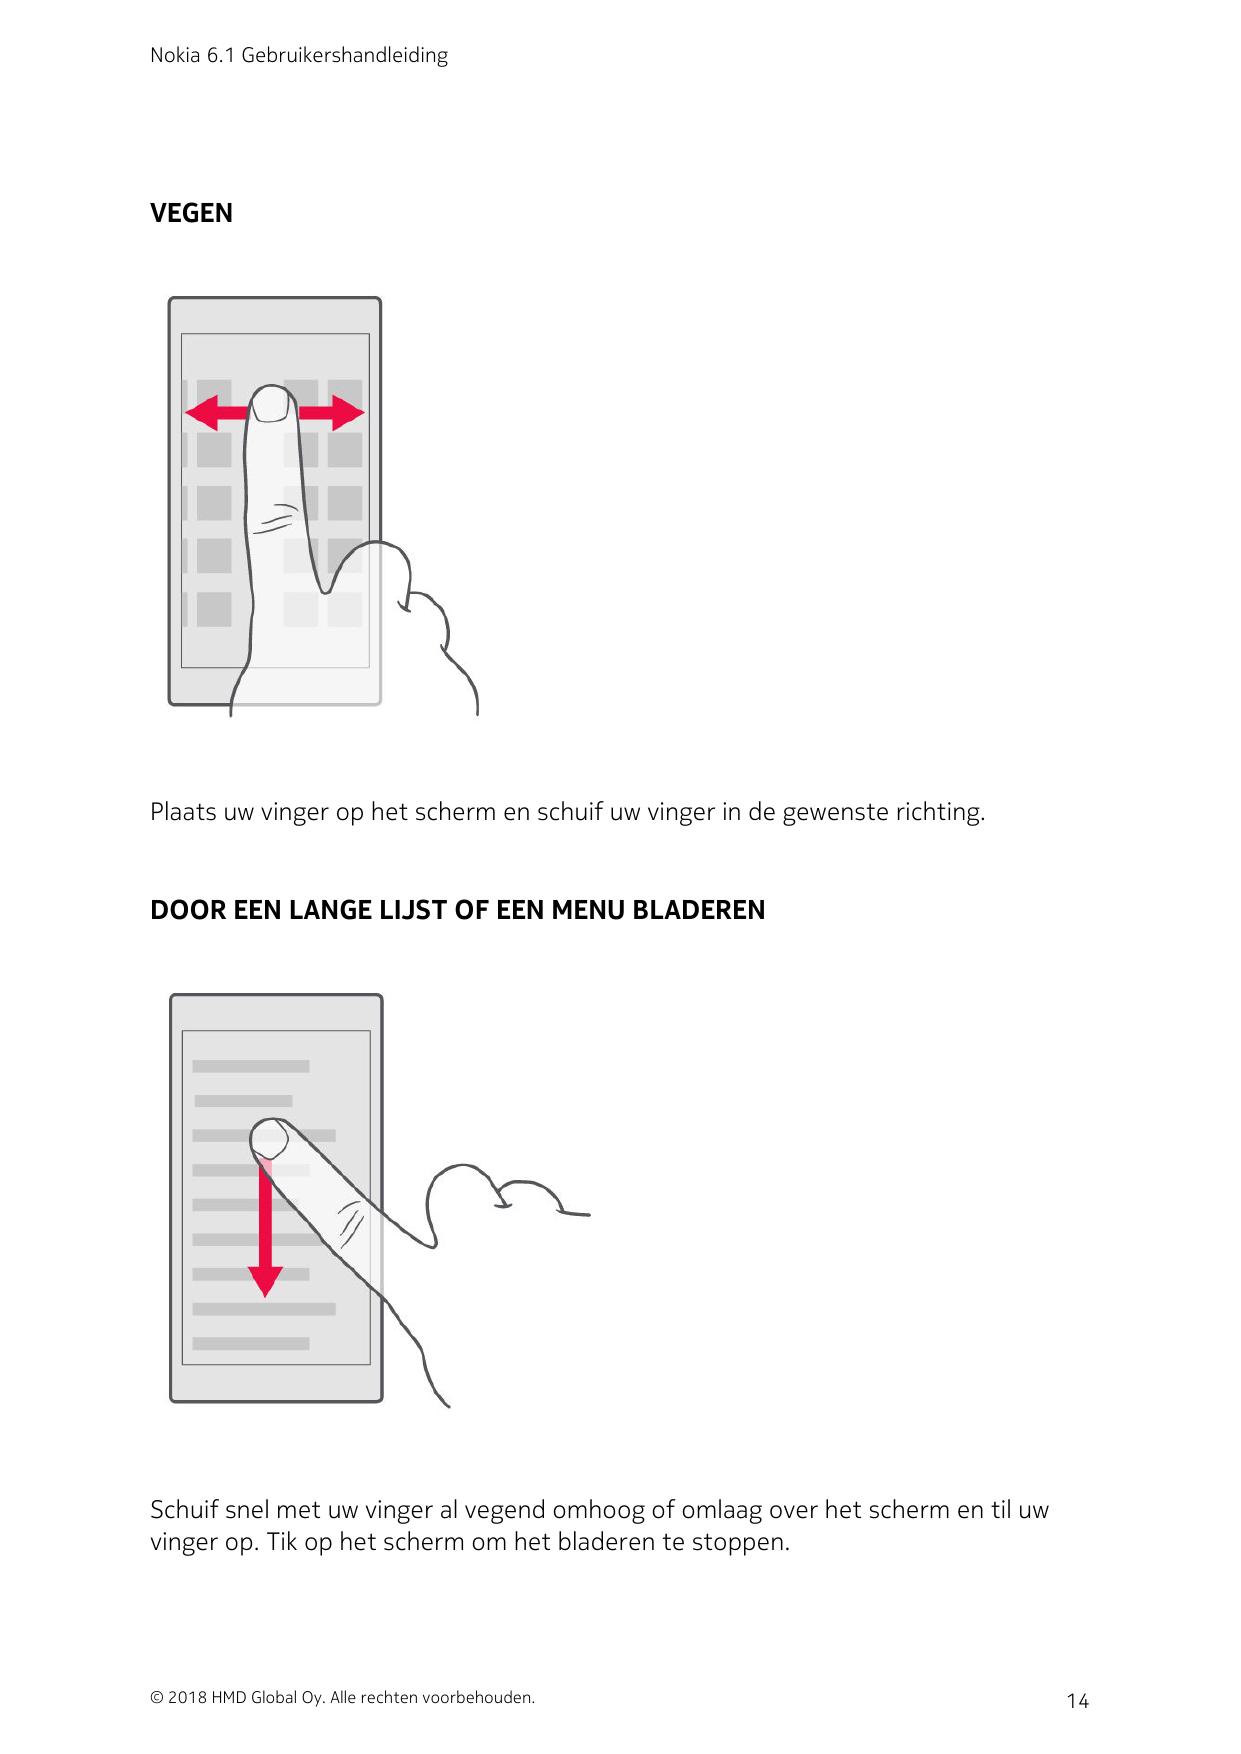 Nokia 6.1 GebruikershandleidingVEGENPlaats uw vinger op het scherm en schuif uw vinger in de gewenste richting.DOOR EEN LANGE LI